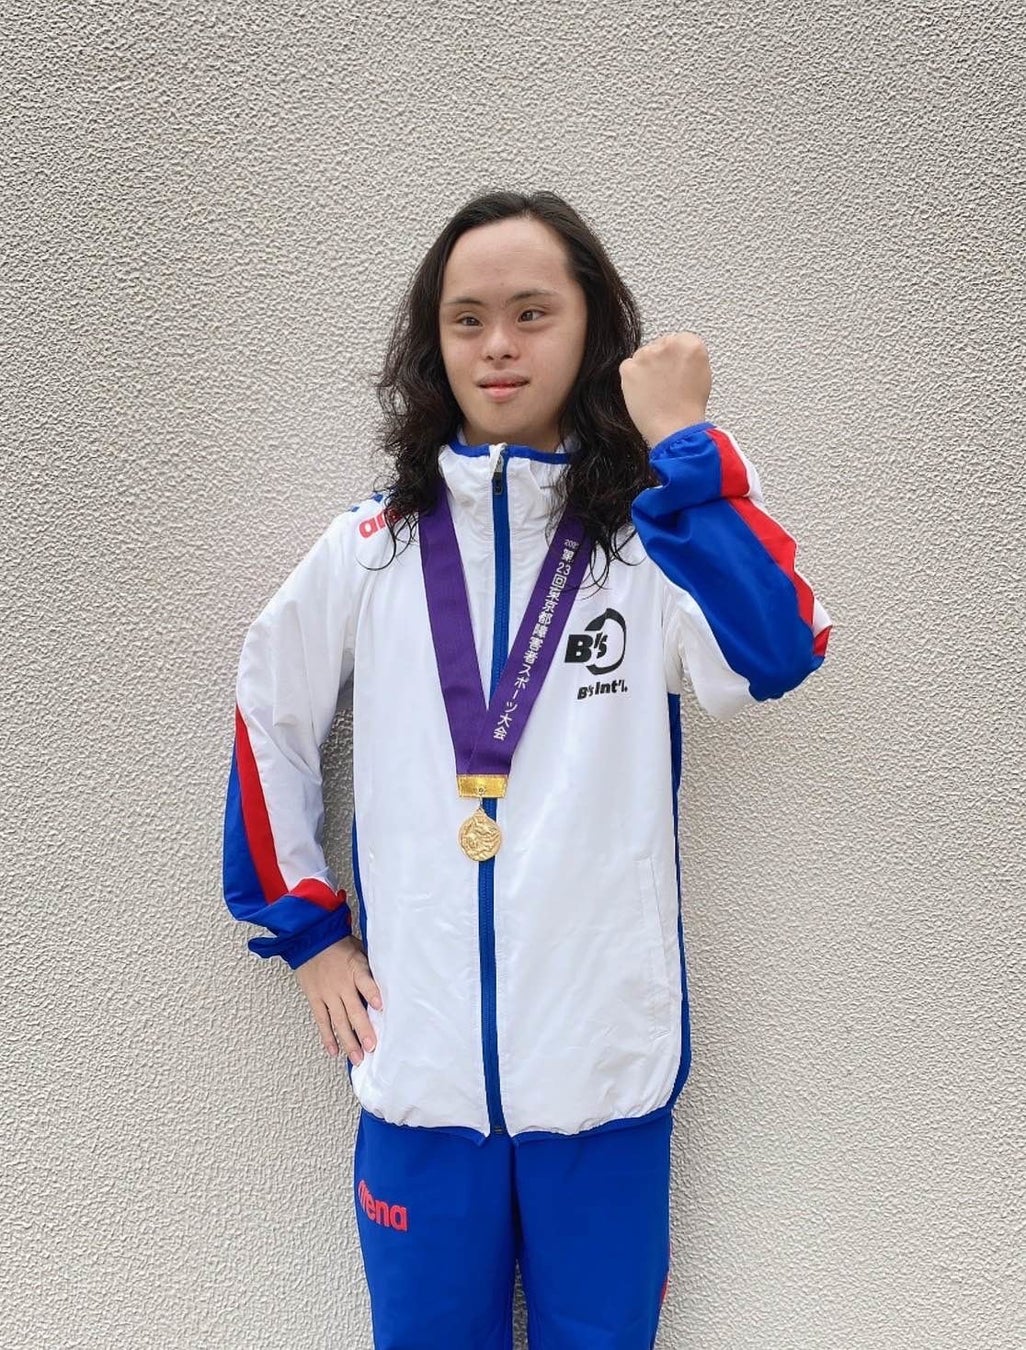 村井海人が第23回東京都障害者スポーツ大会にて金メダルを獲得しました。